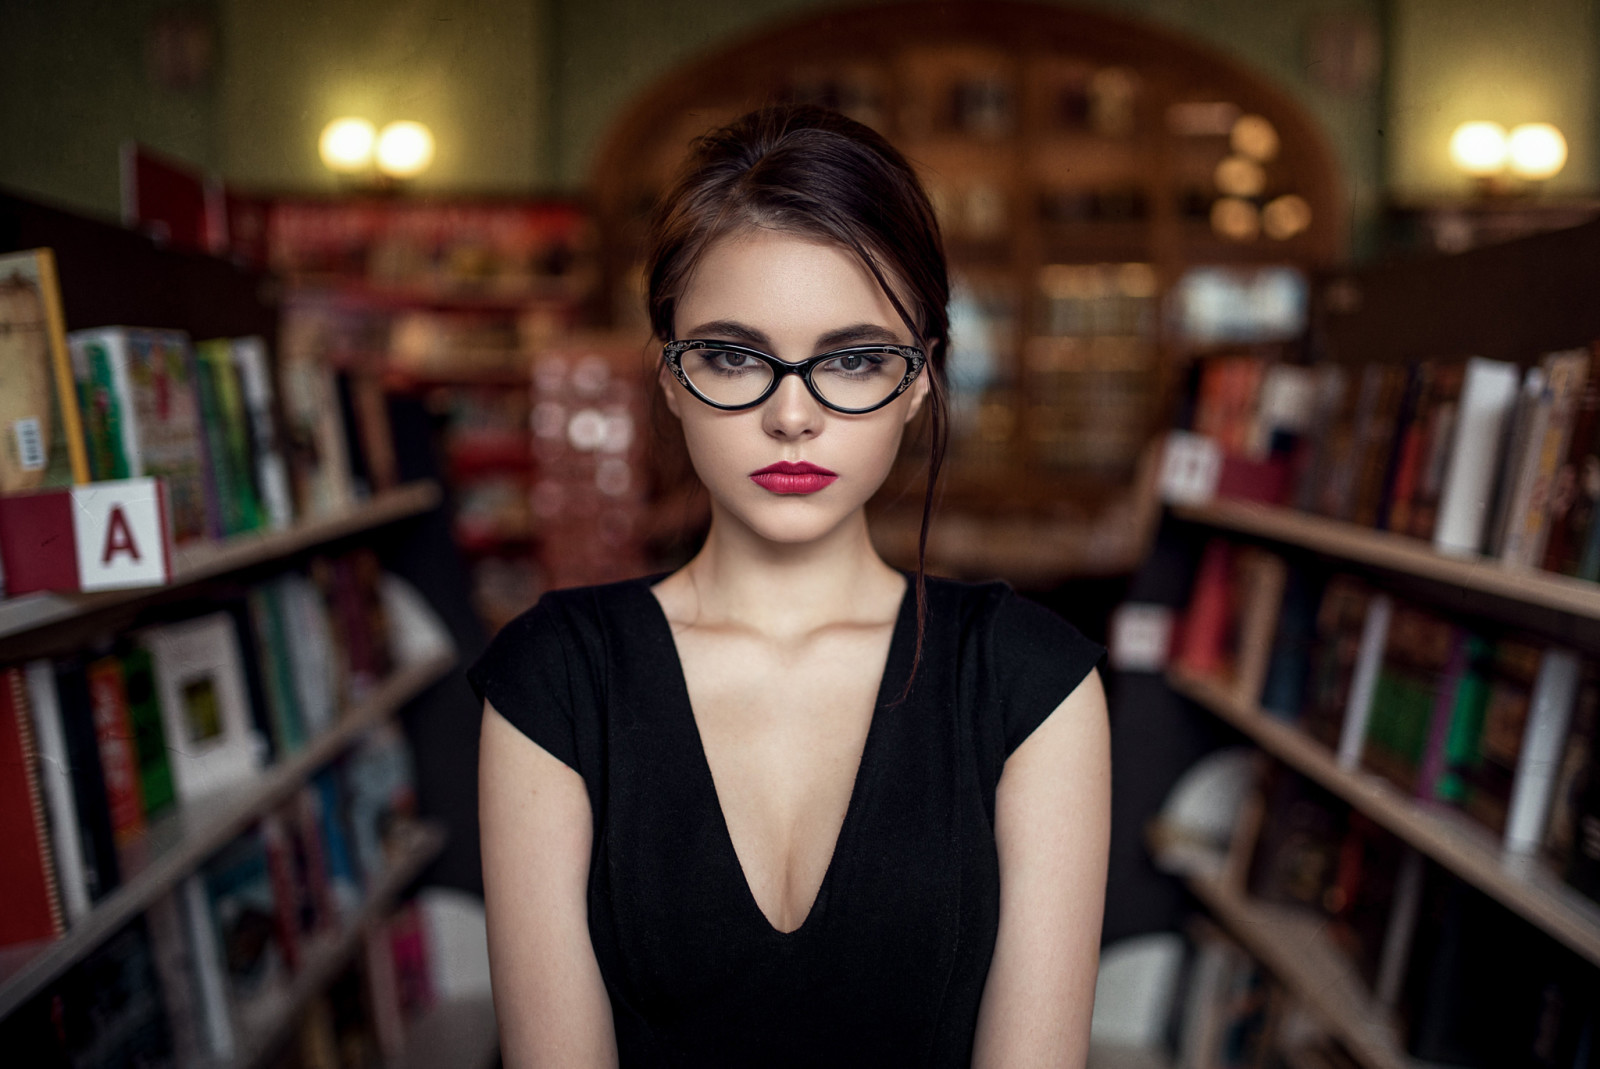 nhìn, khuôn mặt, thư viện, kính, tóc, đôi môi